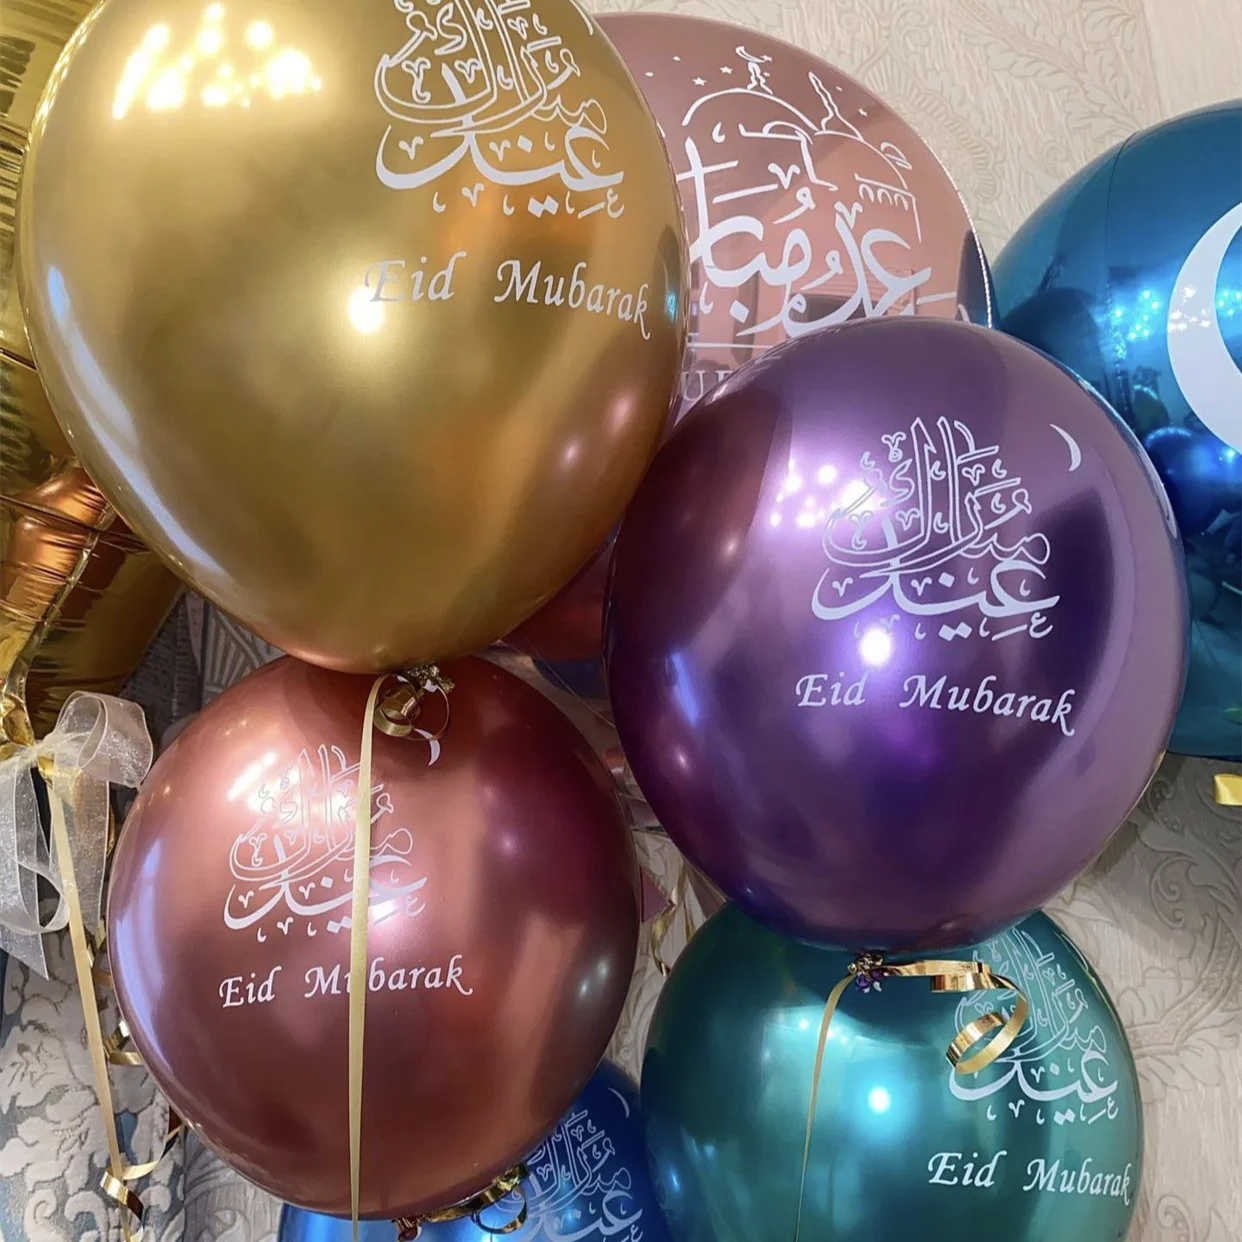 

Латексные воздушные шары в стиле ИД Мубарак, 10 шт., украшение для Рамадана, Мубарак, Мусульманский Исламский фестиваль украшения для вечерин...